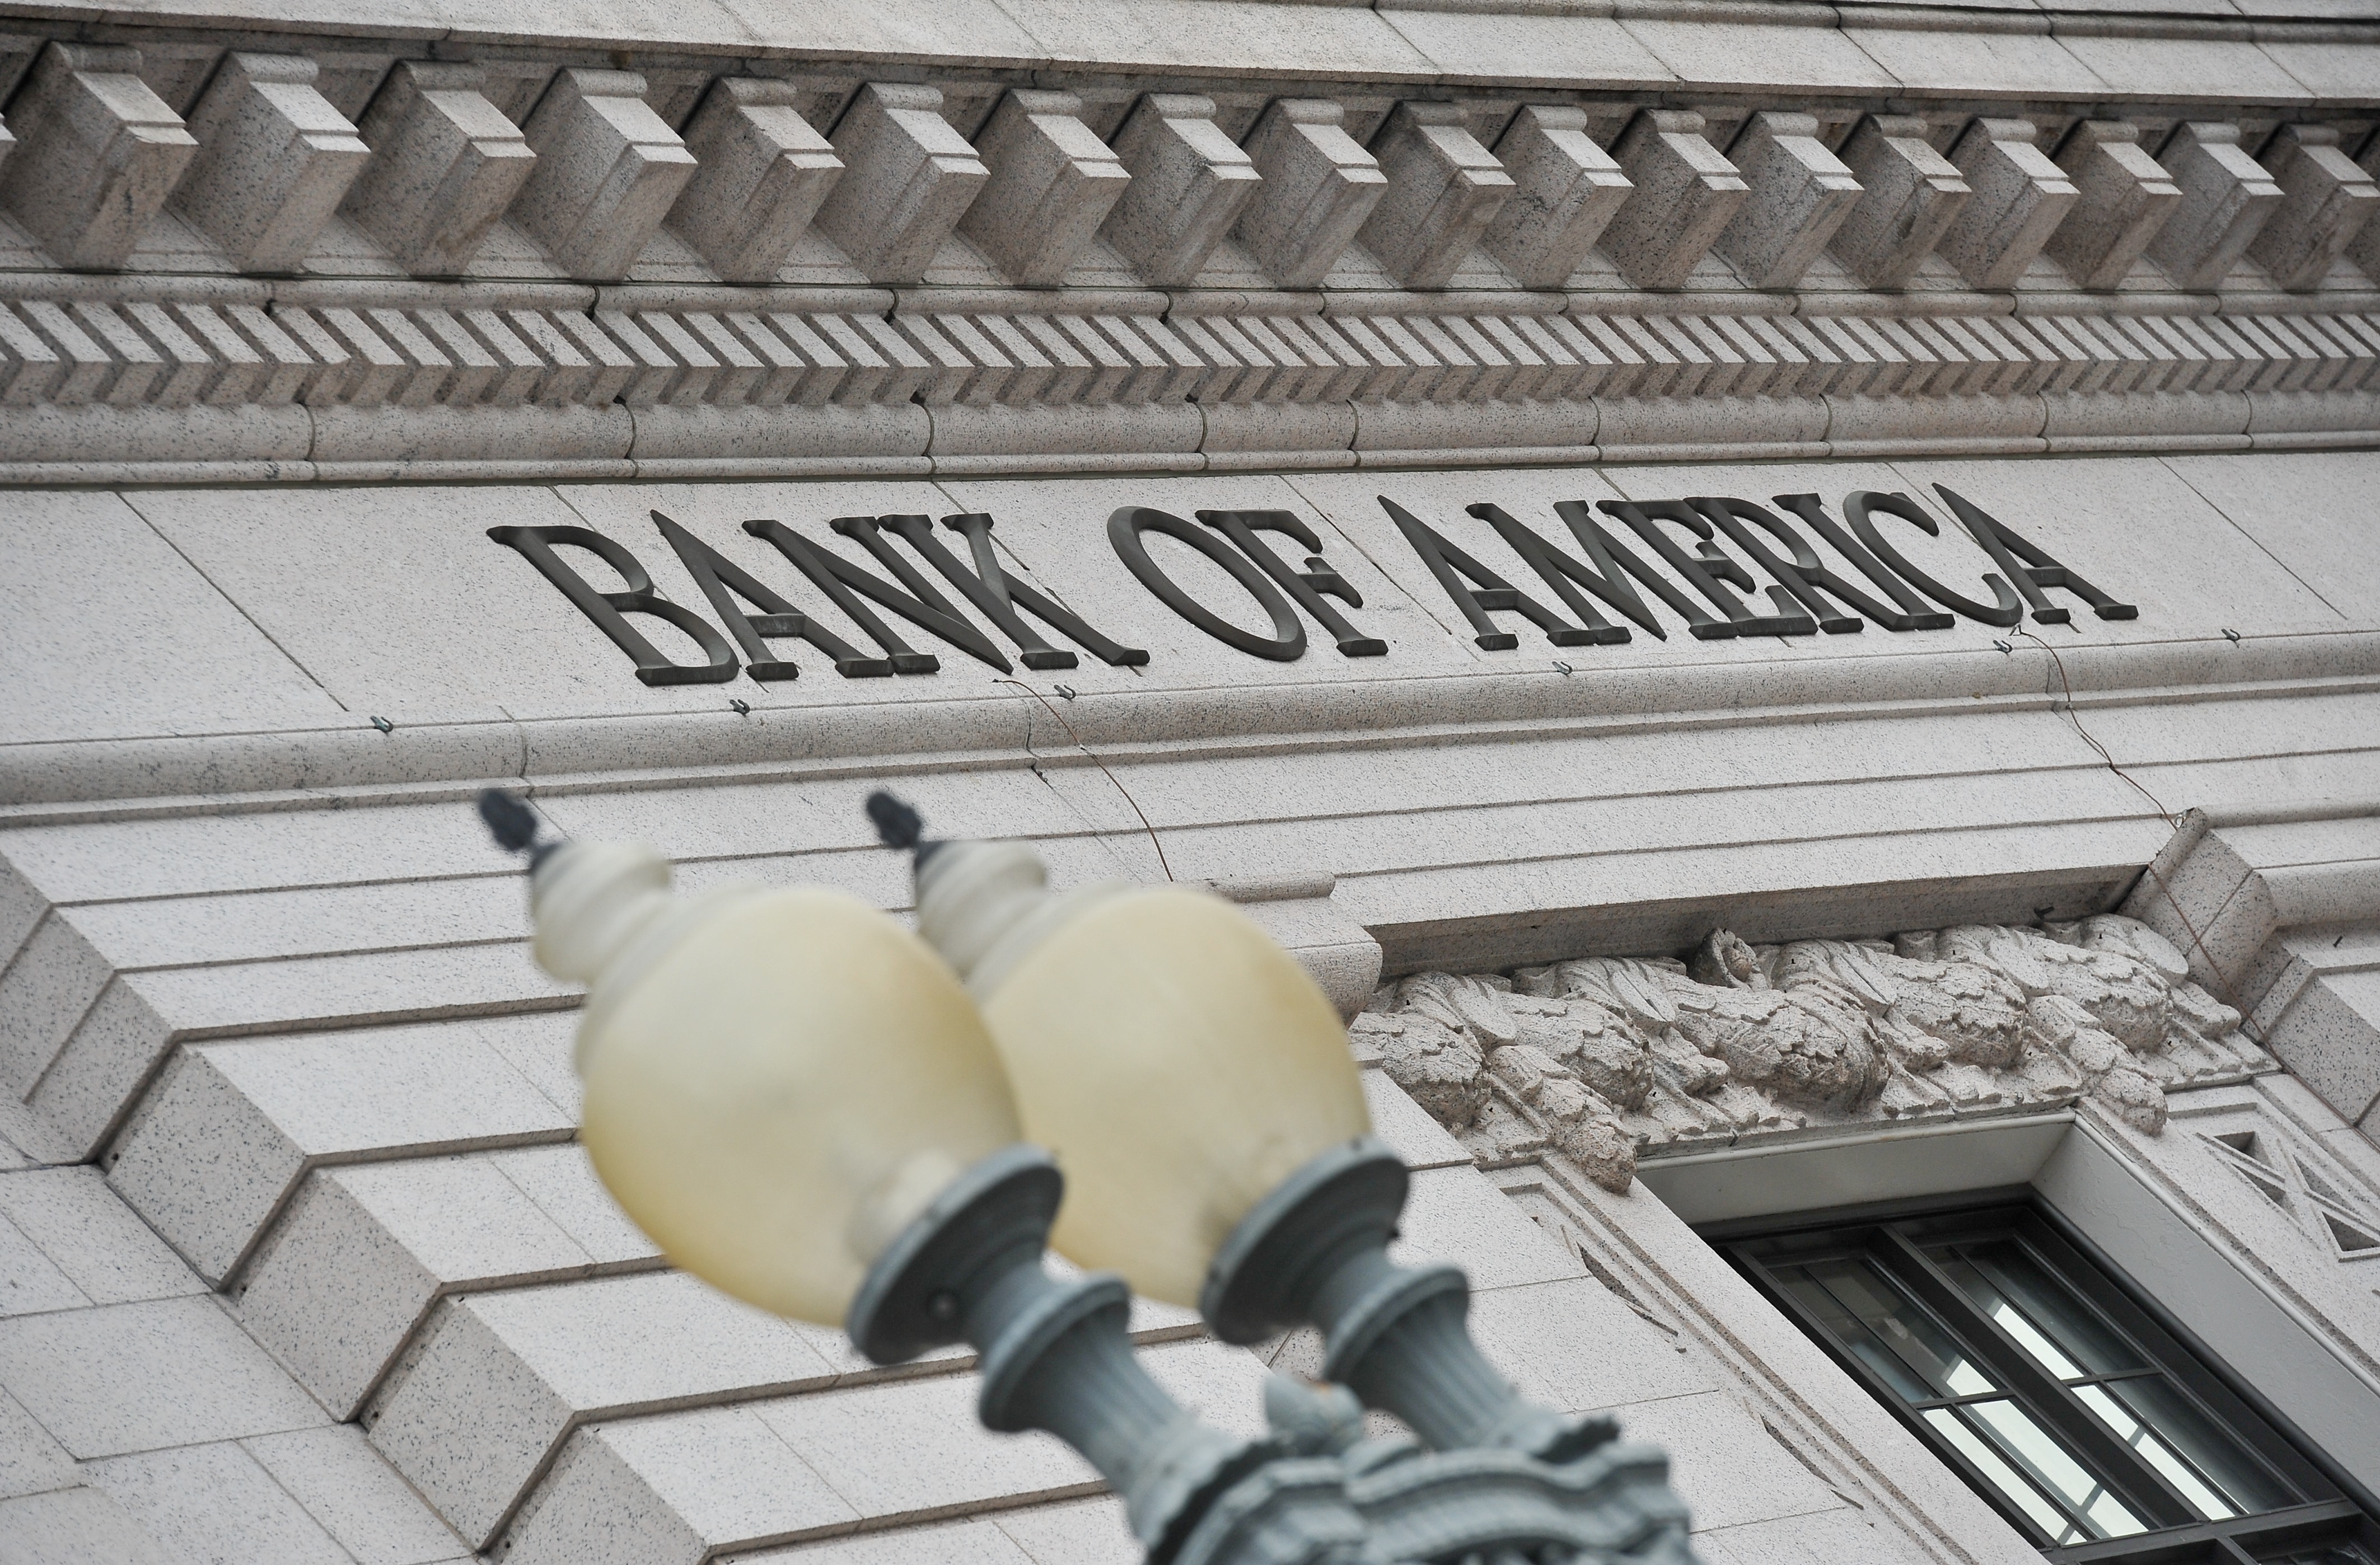 US-ECONOMY-FINANCE-BANKING-BOFA